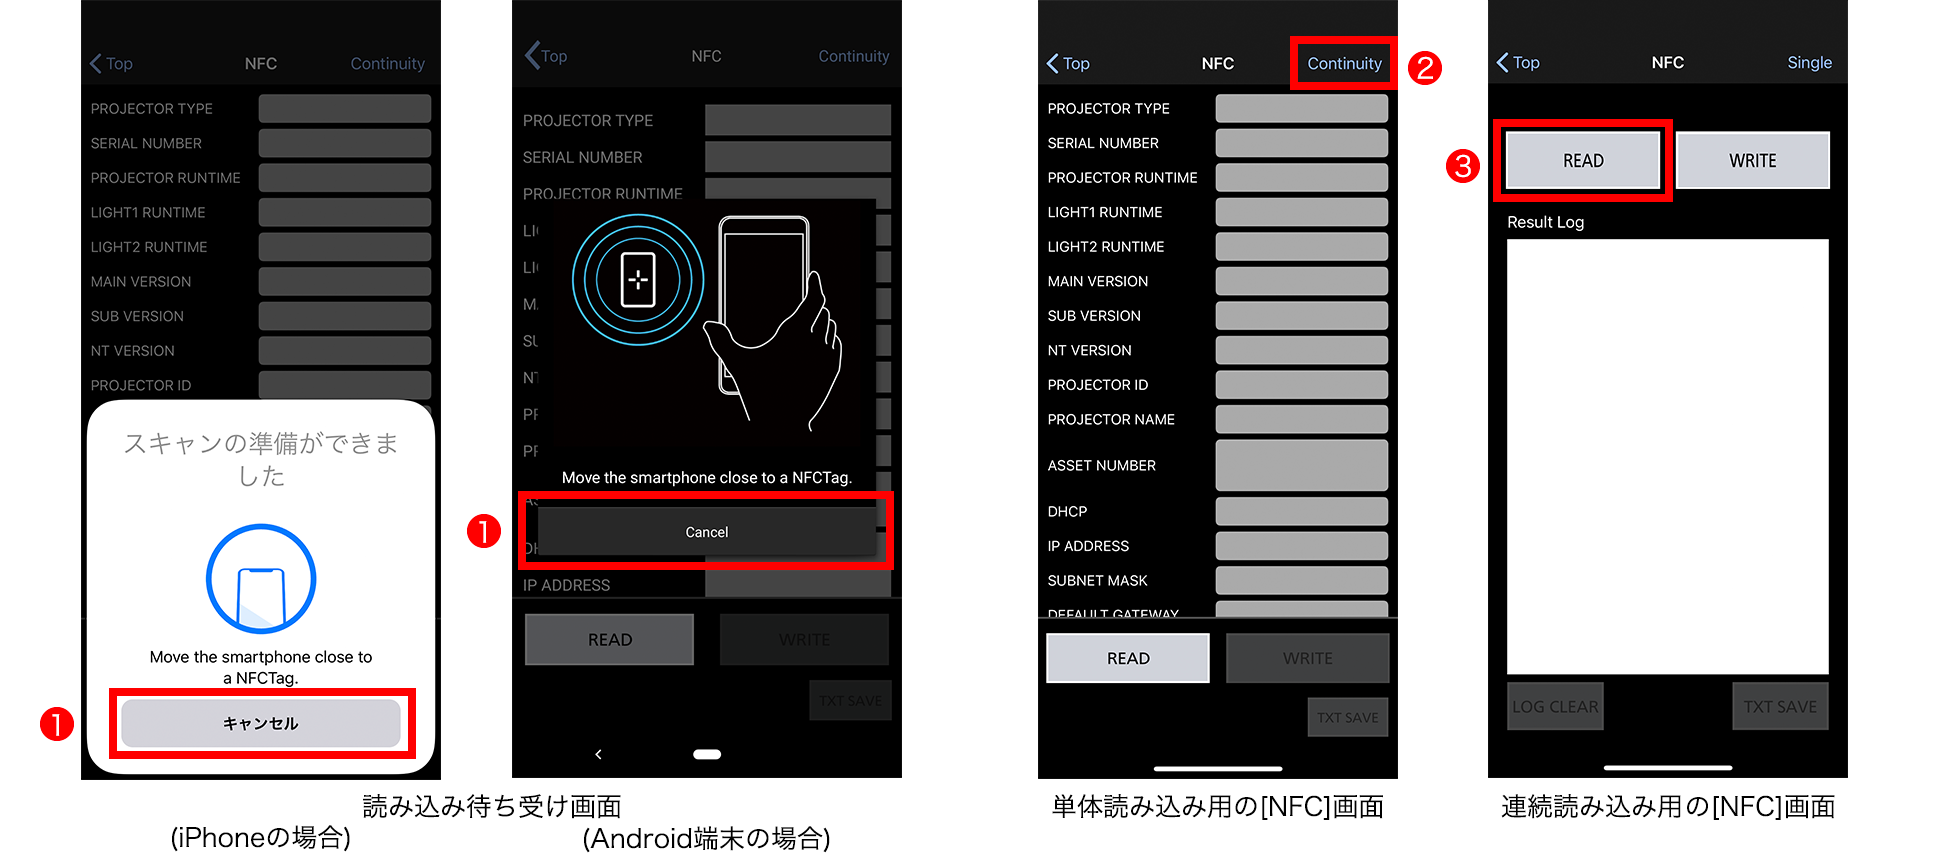 読み込み待ち受け画面(iPhoneの場合/Android端末の場合)、単体読み込み用の[NFC]画面、連続読み込み用[NFC]画面